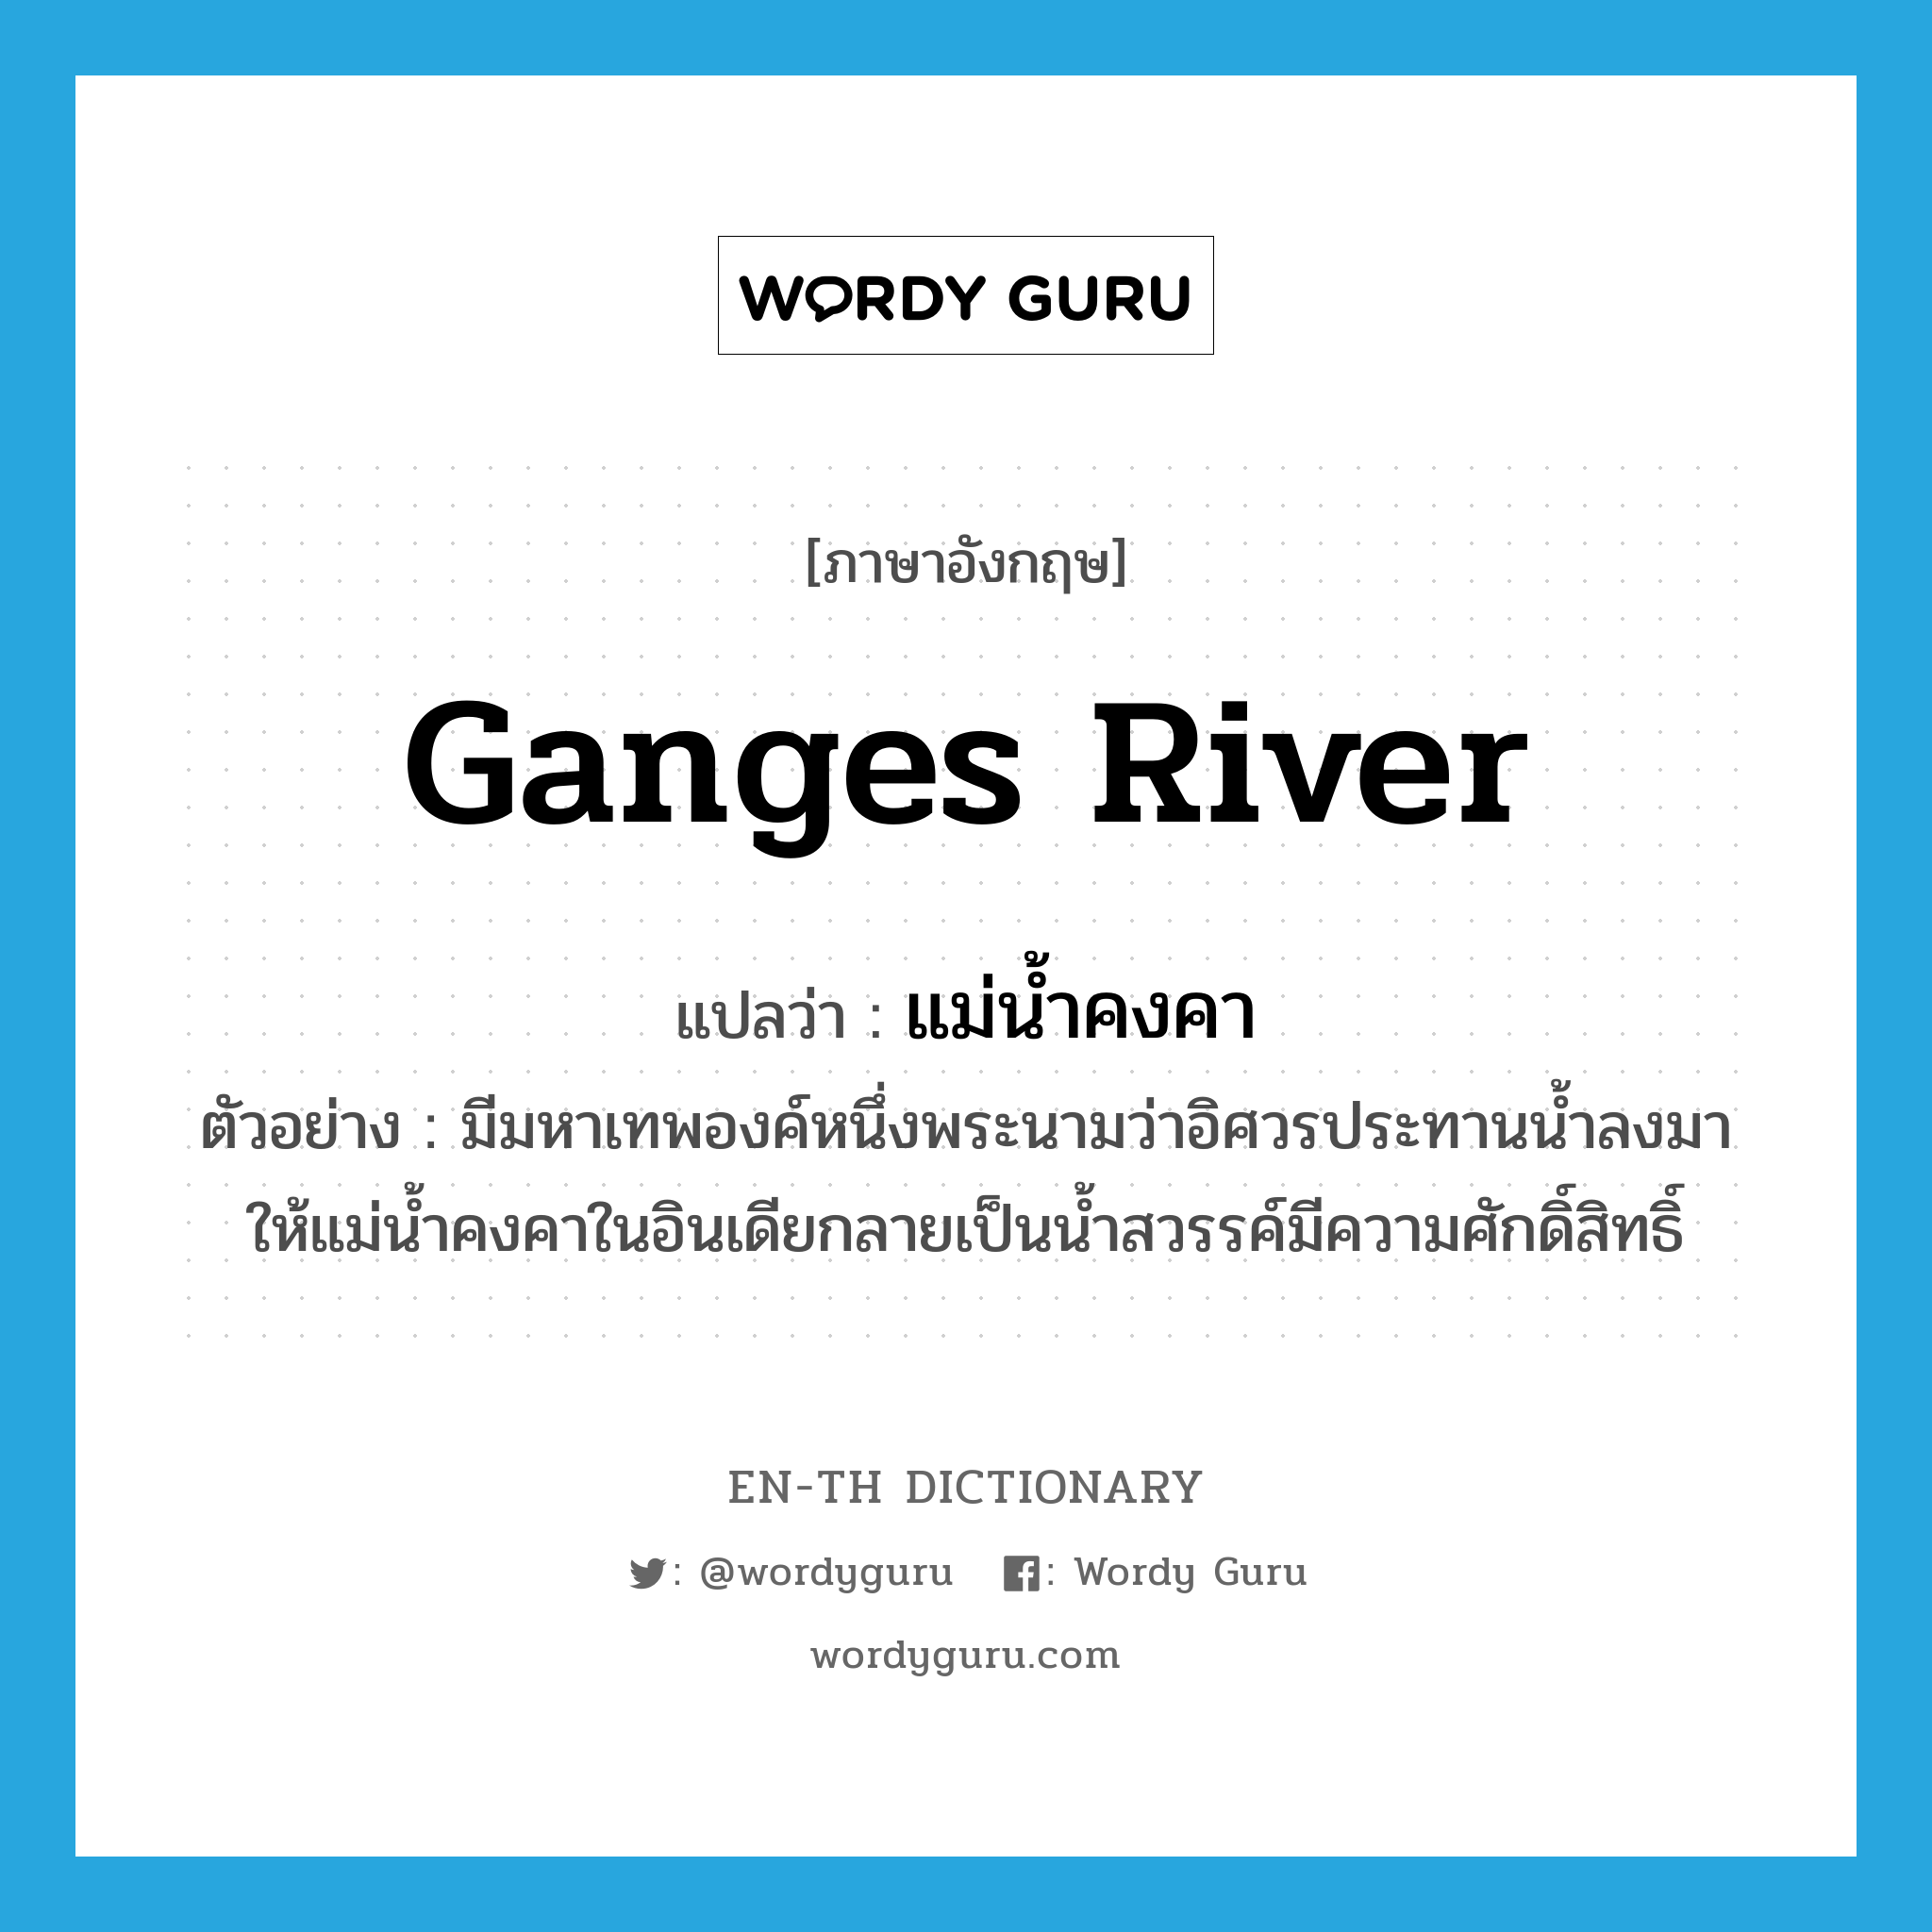 Ganges river แปลว่า?, คำศัพท์ภาษาอังกฤษ Ganges river แปลว่า แม่น้ำคงคา ประเภท N ตัวอย่าง มีมหาเทพองค์หนึ่งพระนามว่าอิศวรประทานน้ำลงมาให้แม่น้ำคงคาในอินเดียกลายเป็นน้ำสวรรค์มีความศักดิ์สิทธิ์ หมวด N